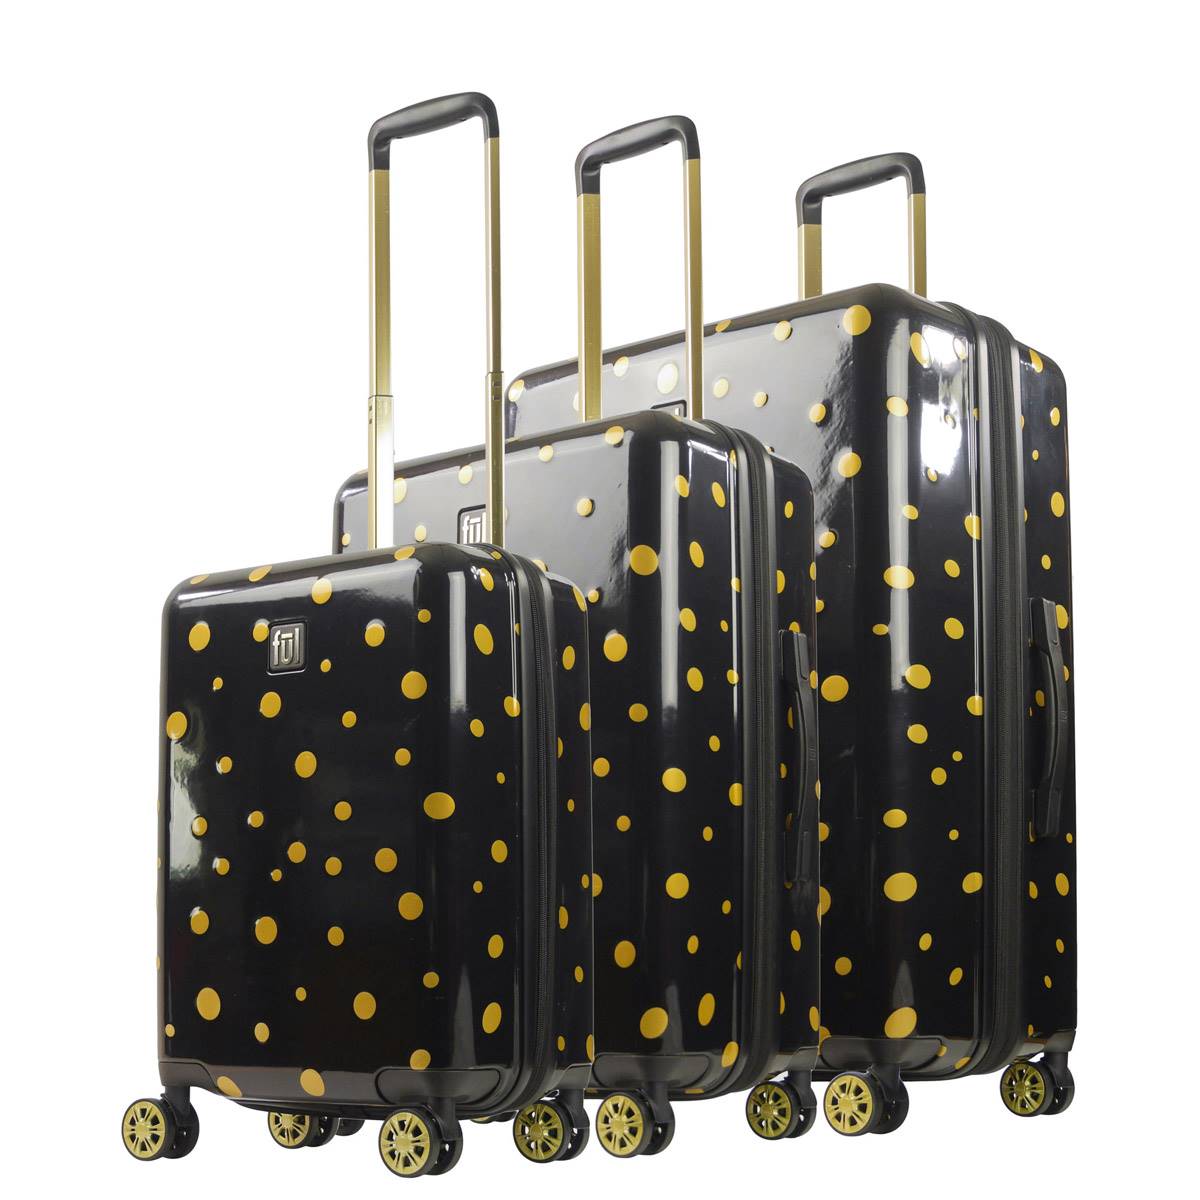 FUL 3pc. Impulse Mixed Dots Hardside Spinner Luggage Set